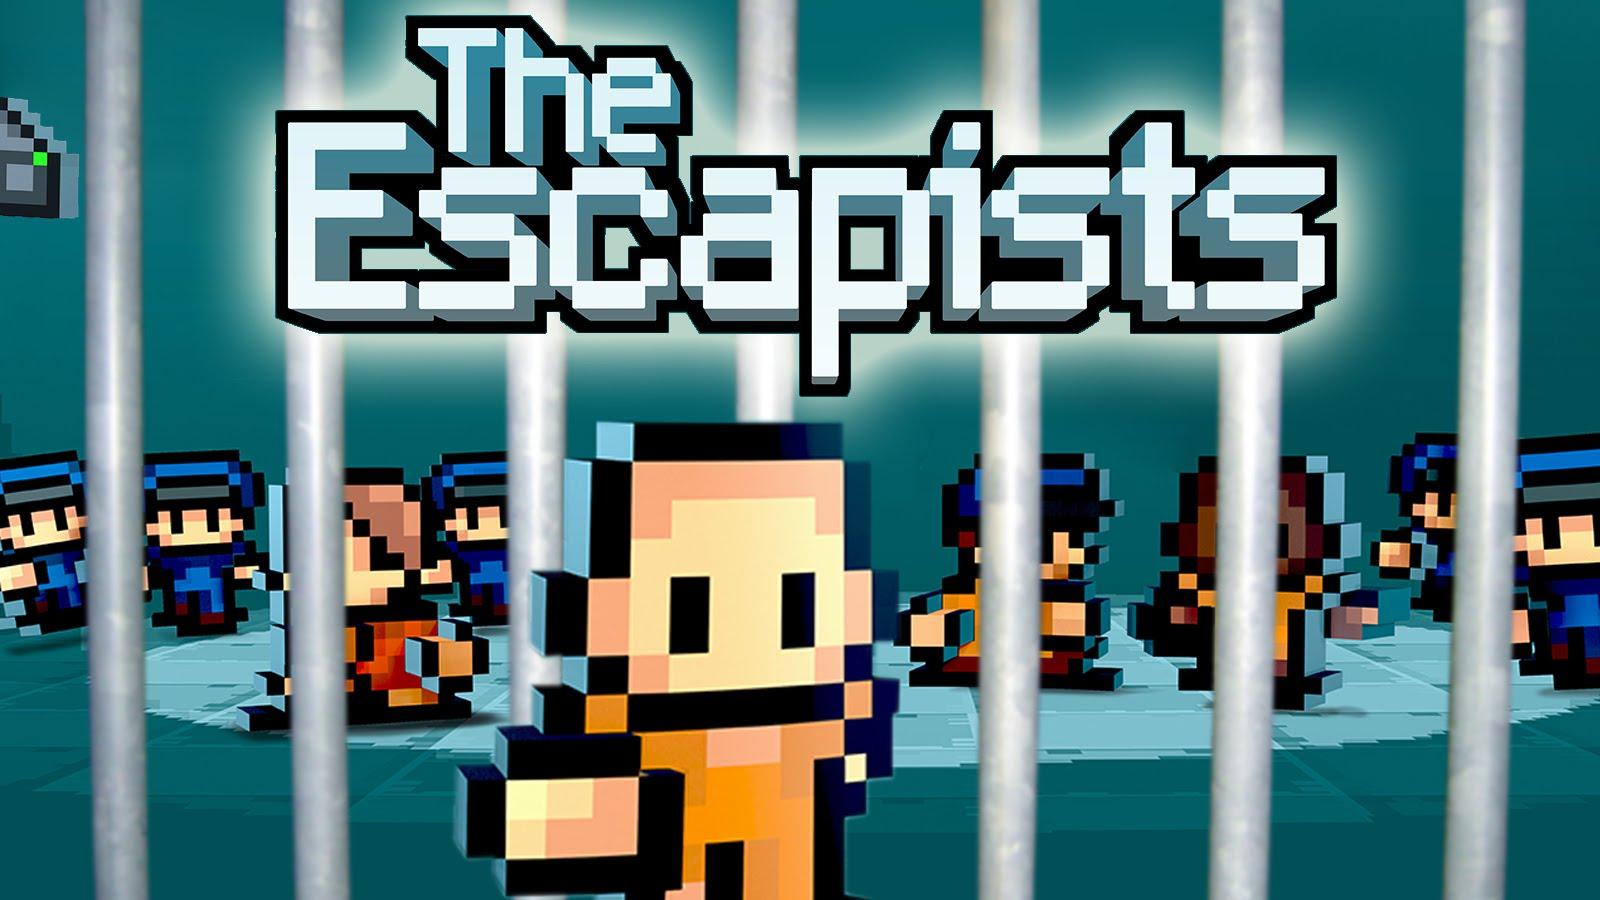 the escapist 2 prison download free